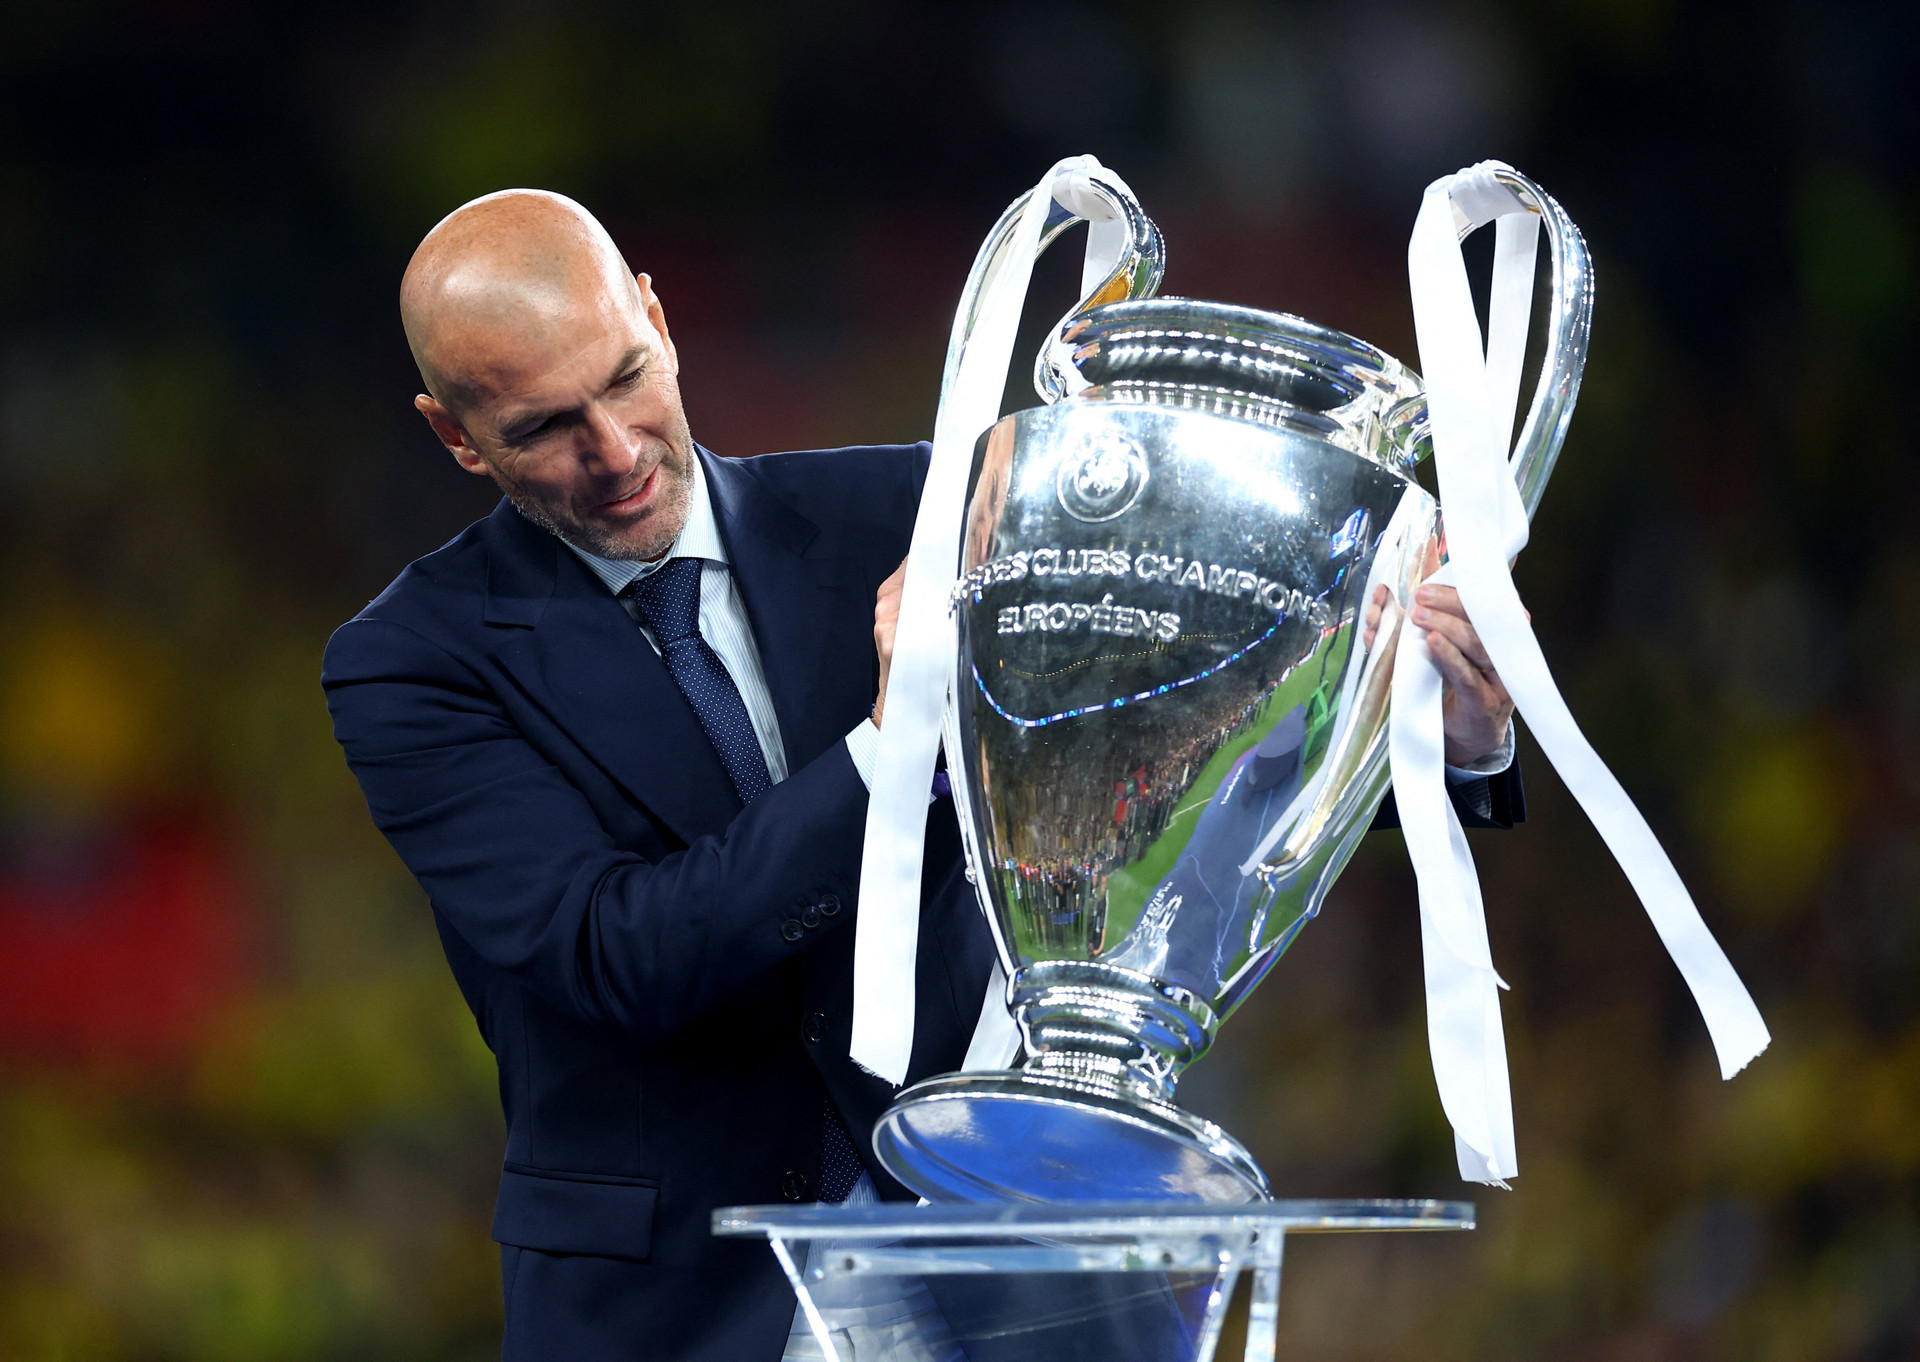 Cựu huấn luyện viên Real Madrid Zinedine Zidane người mang chiếc cúp Champions League lên bục trao giải. Ông từng giúp đội bóng của Tây Ban Nha đăng quang 3 lần liên tiếp. (Ảnh: Reuters)